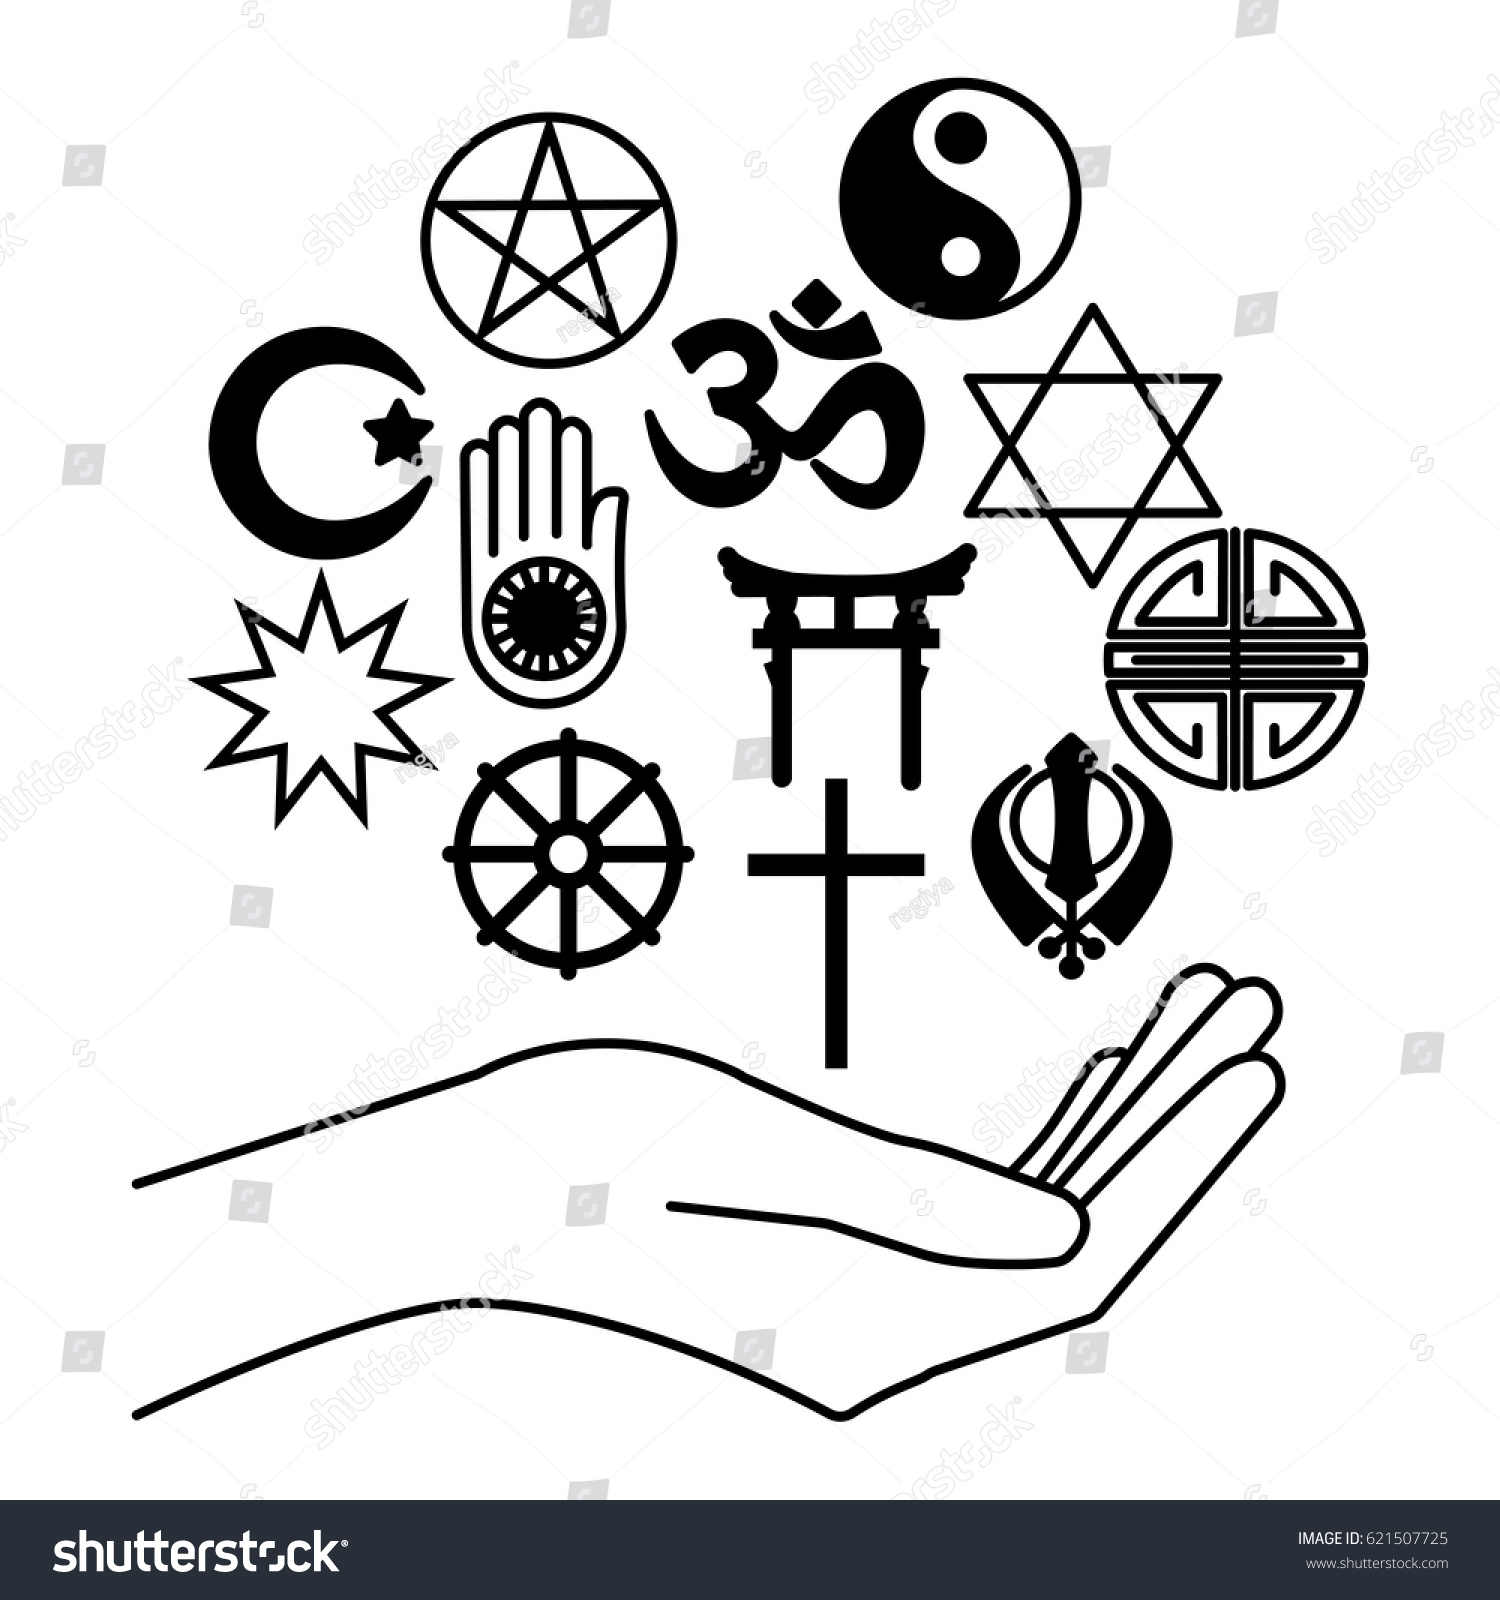 Символ всех религий в одном